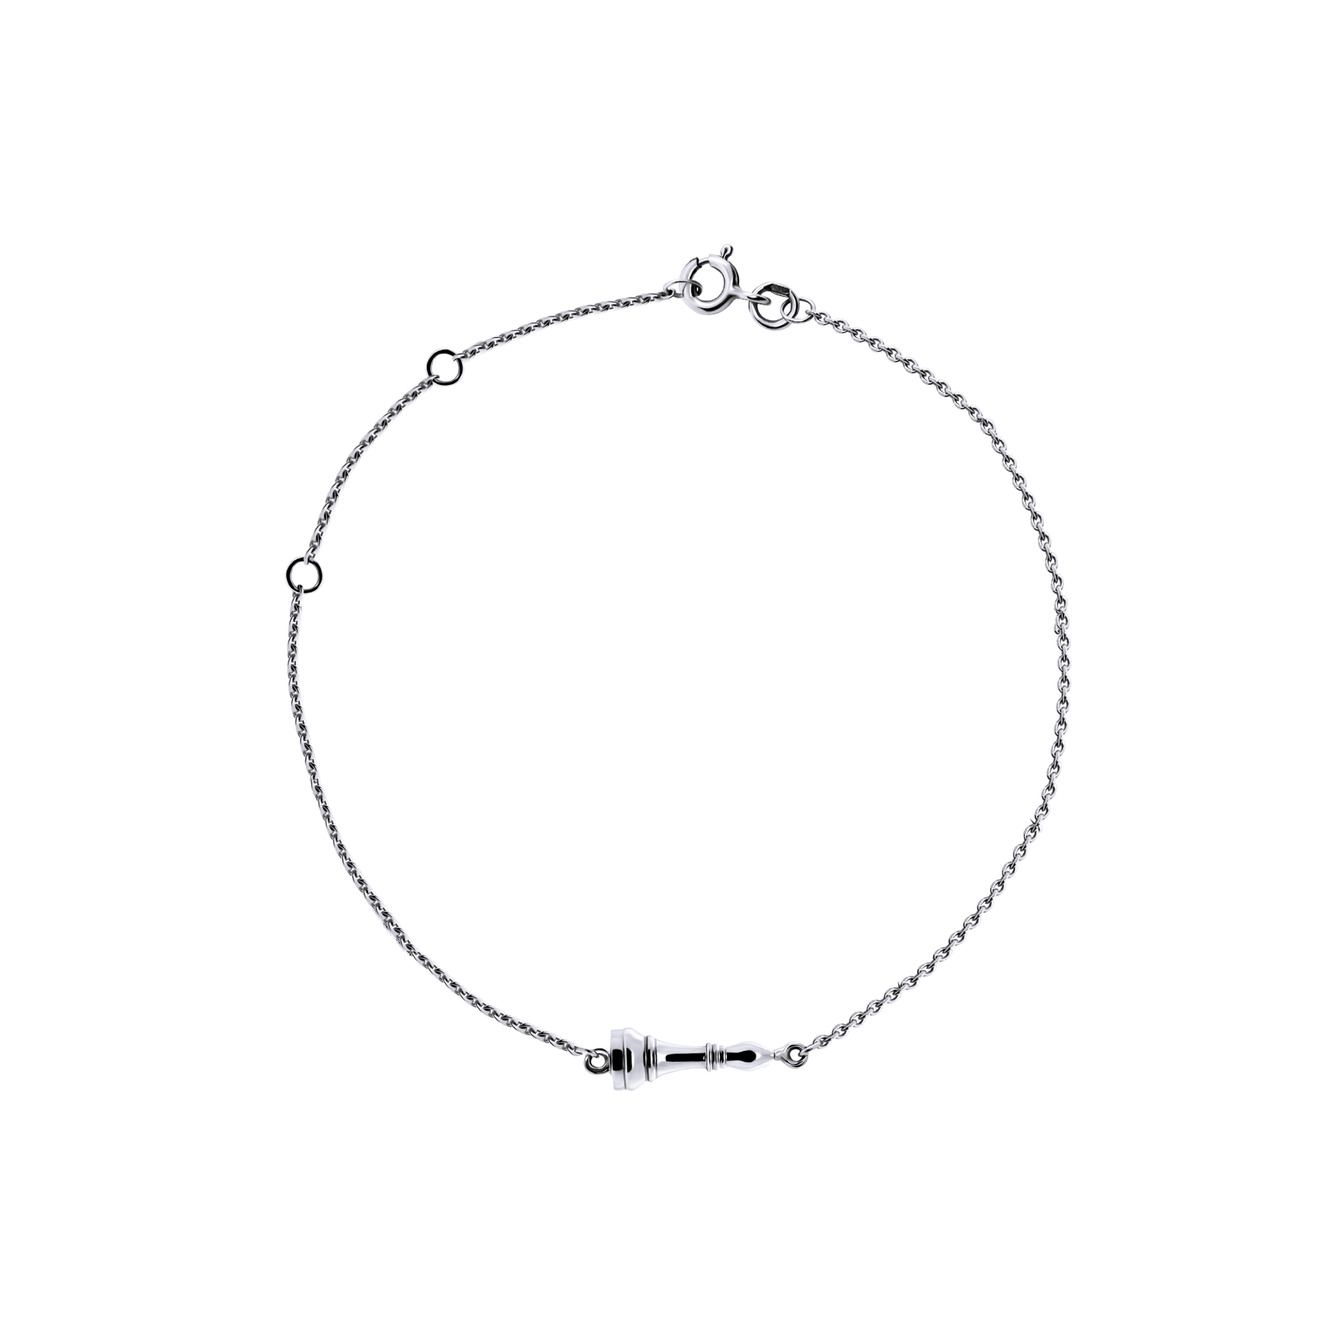 Prosto Jewelry Тонкий браслет «Слон» из серебра подвеска серебряная prosto jewelry слон 1 шт